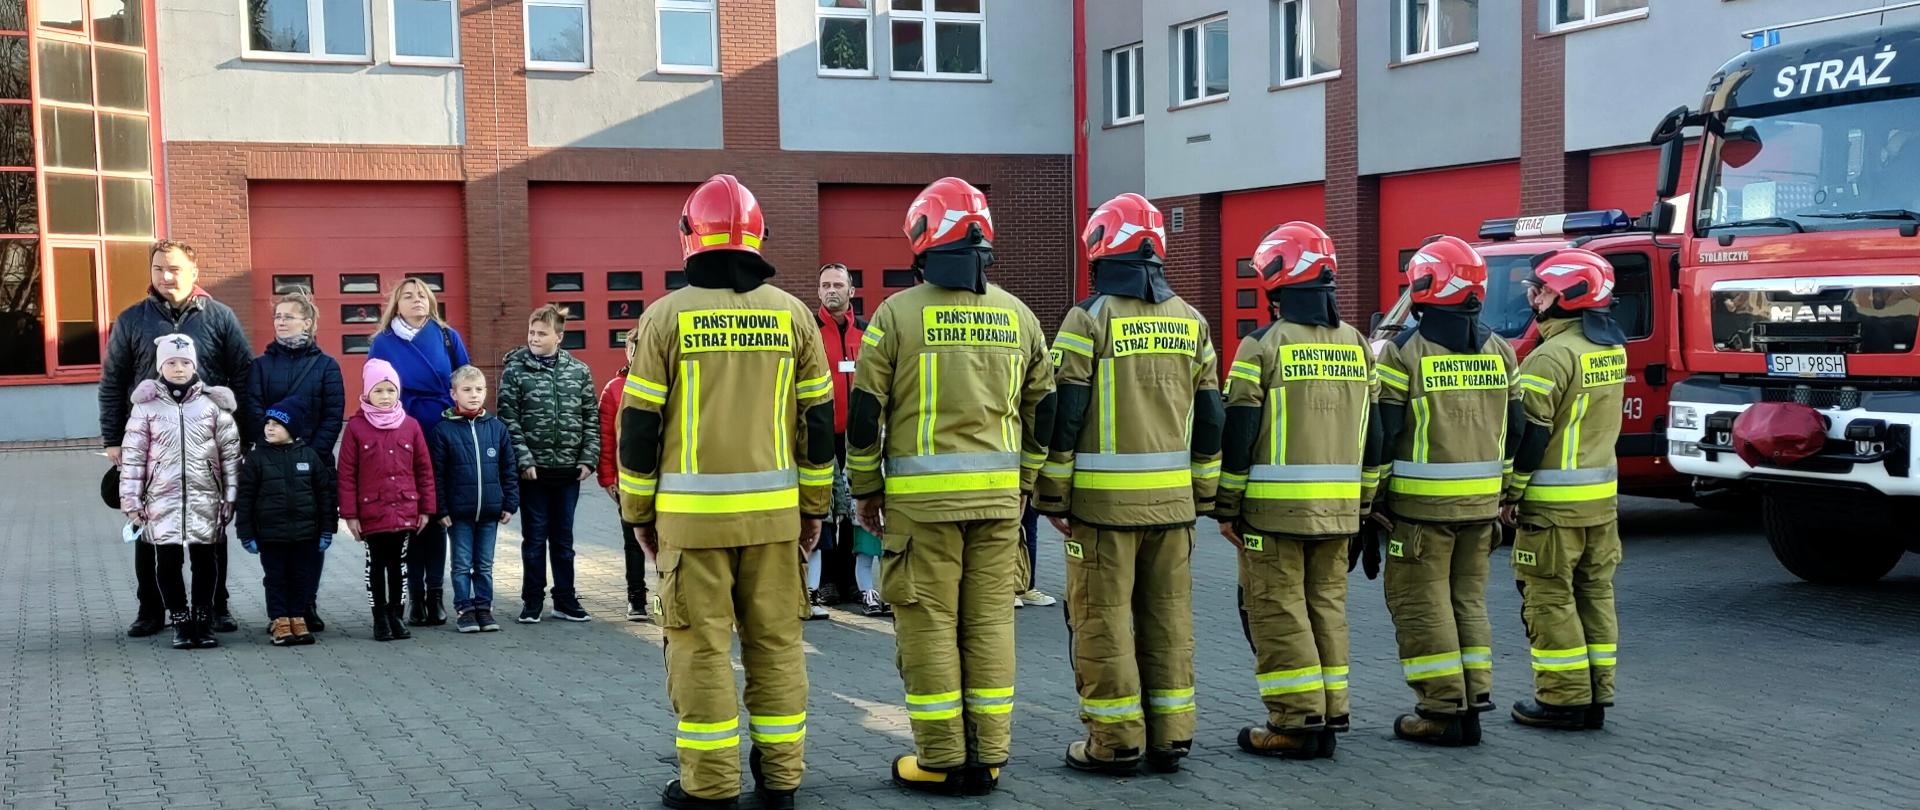 Zdjęcie przedstawia grupę strażaków stojących w szeregu. Na drugim planie widać grupę dzieci wraz z opiekunami. Z prawej strony stoją samochody ratowniczo - gaśnicze.